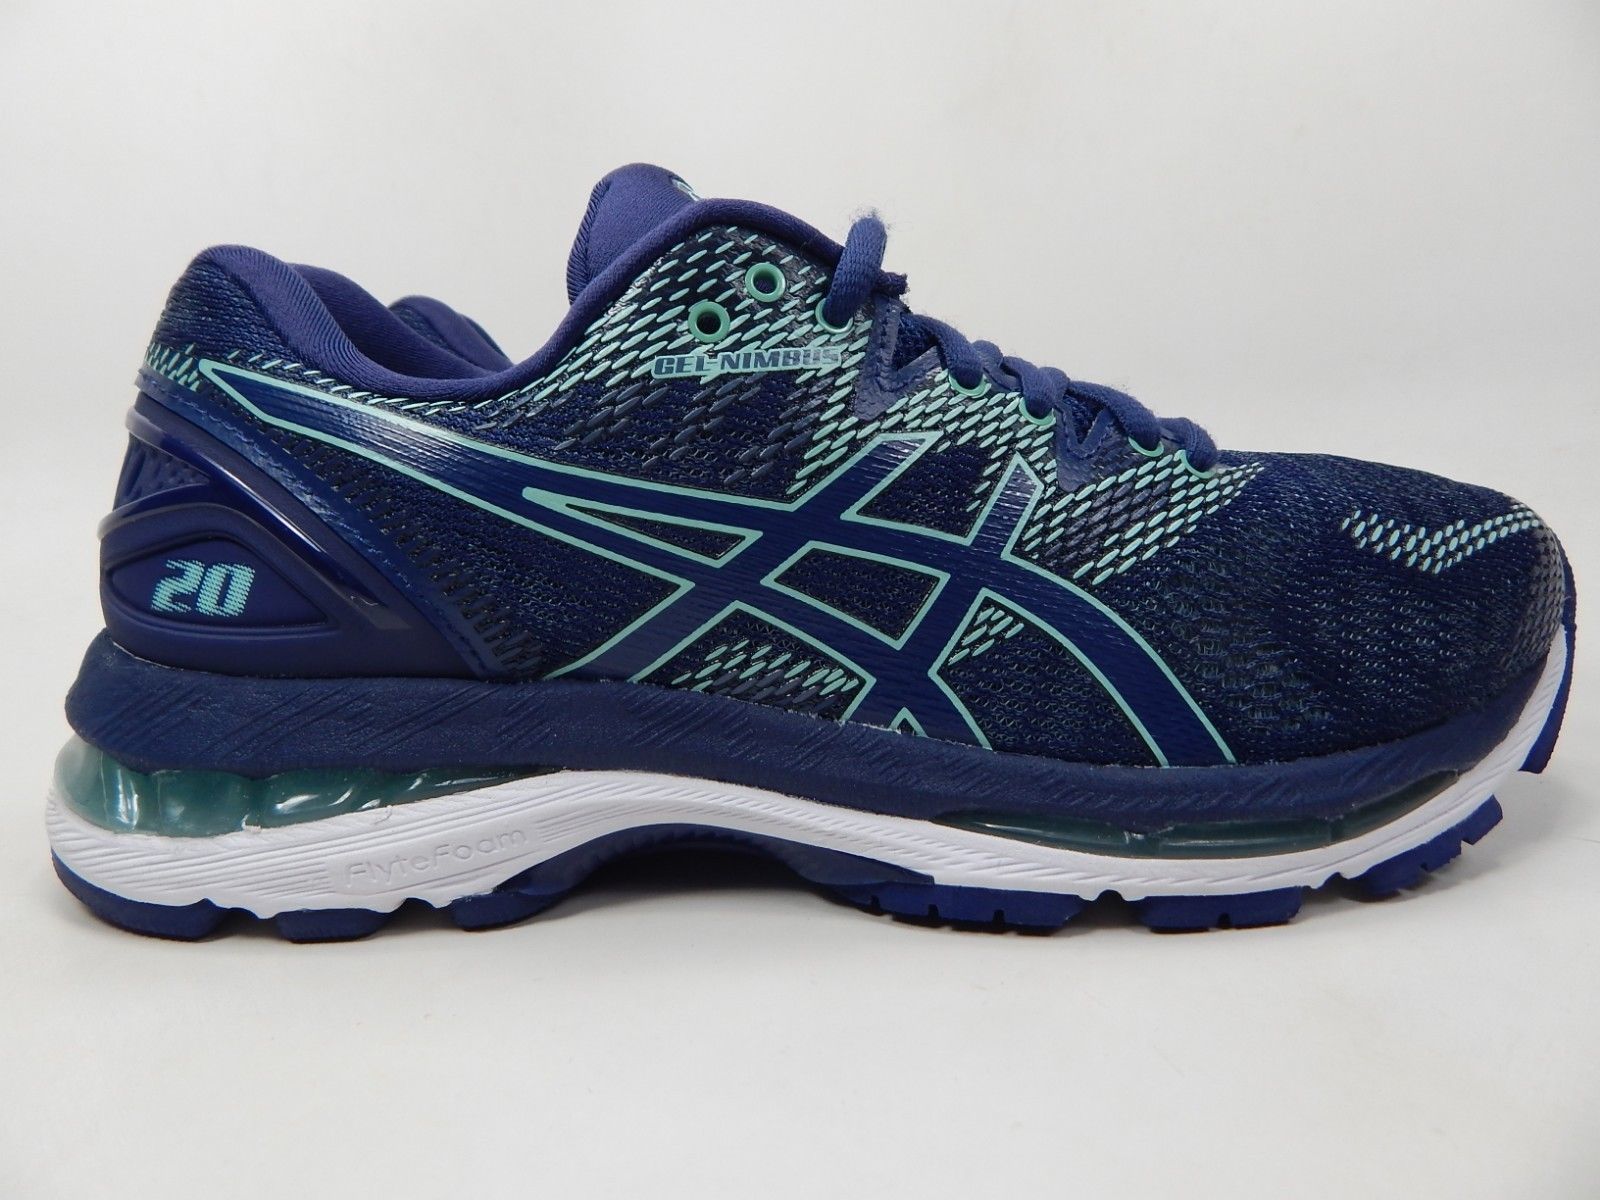 Asics Gel Nimbus 20 Size: 8 M (B) EU 39.5 Women's Running Shoes Blue ...